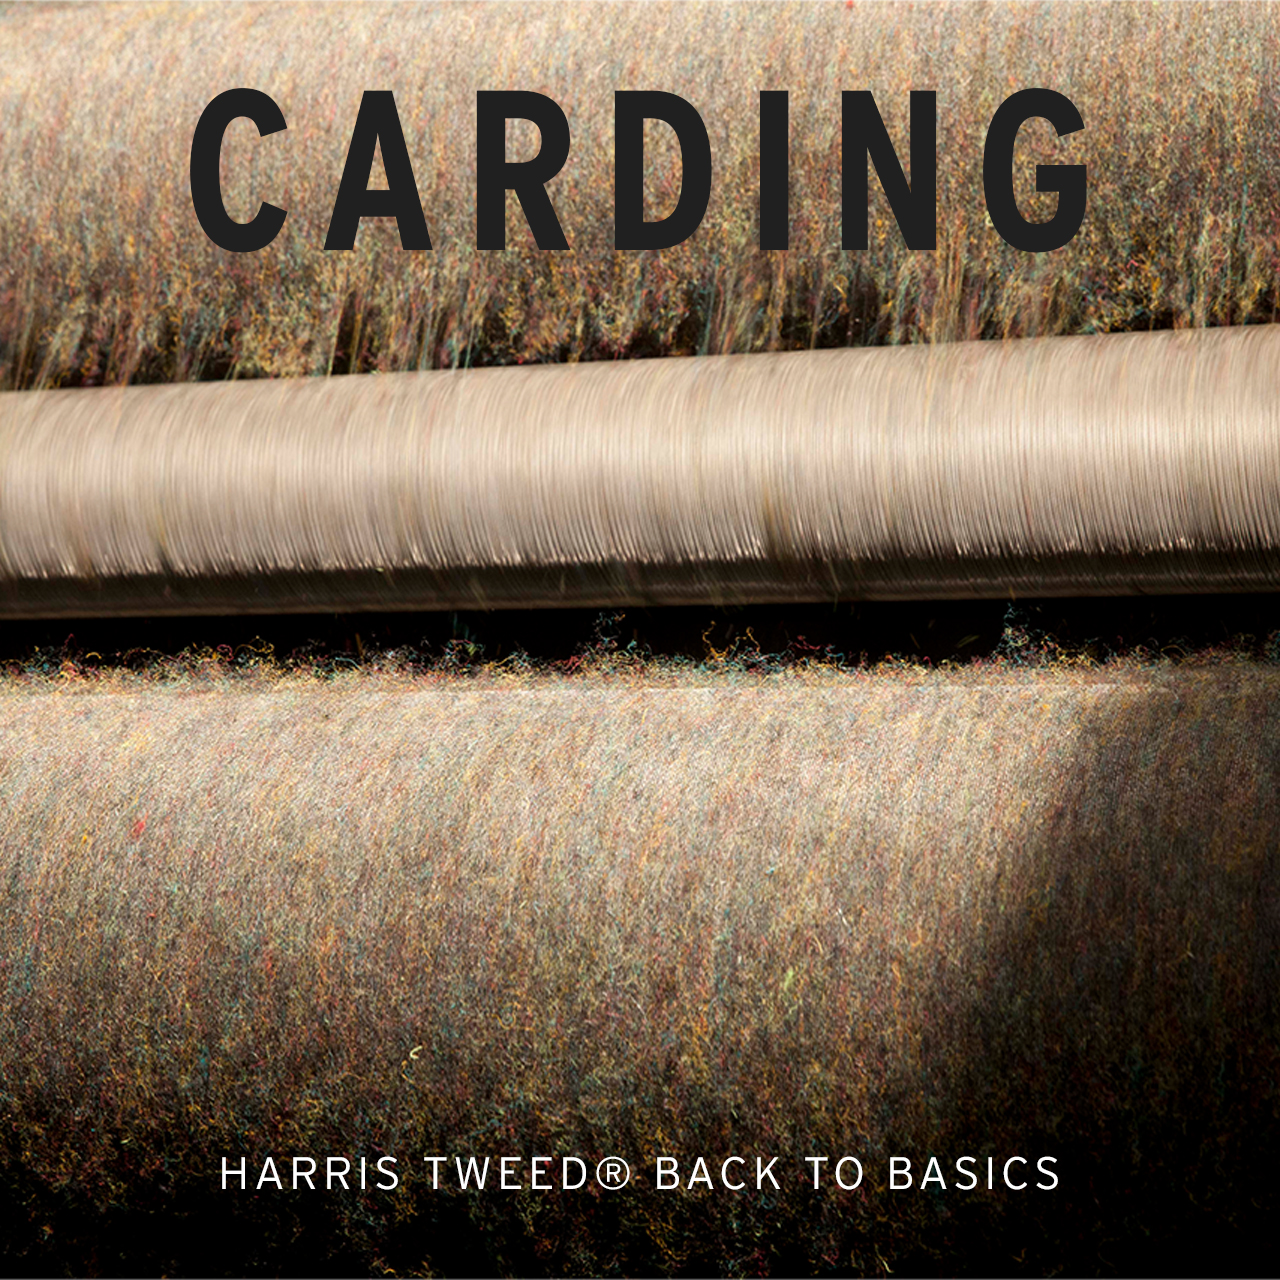 Harris Tweed carding series